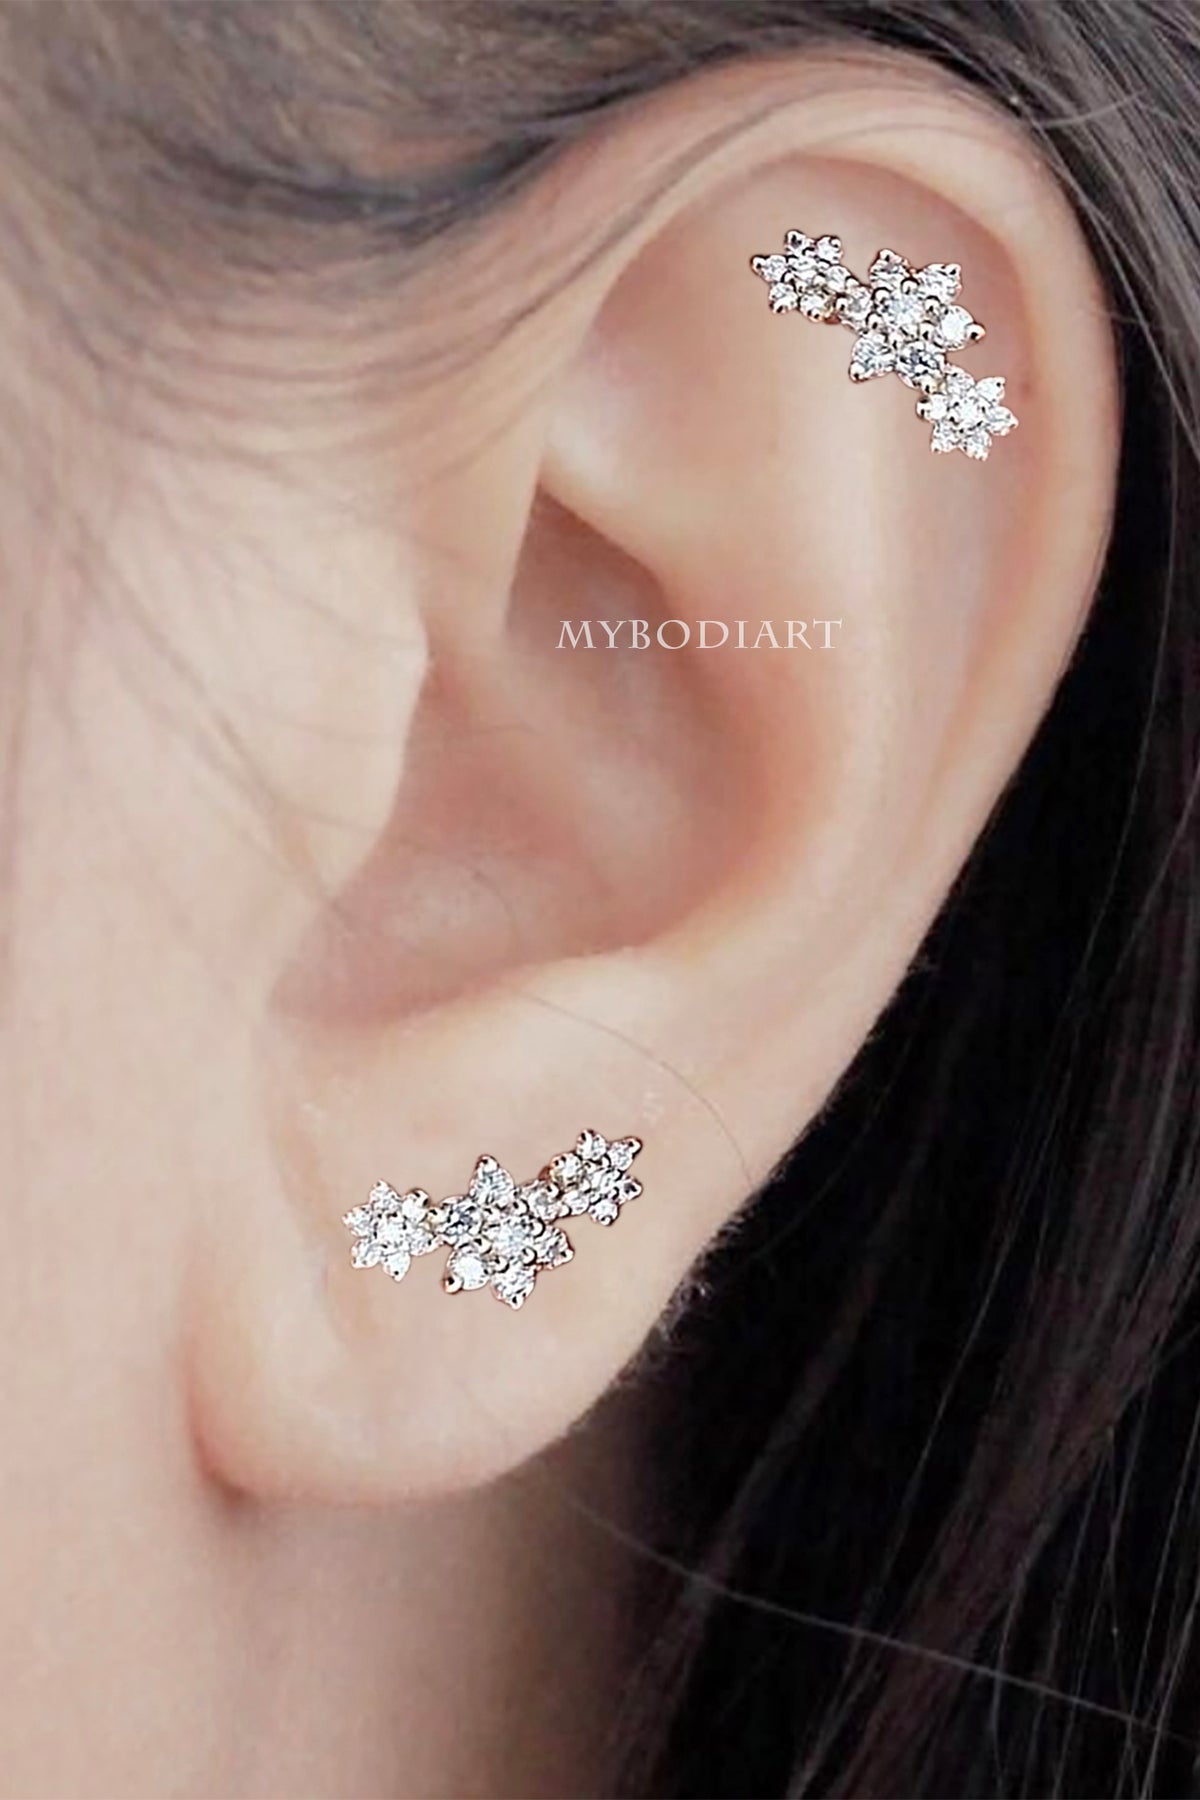 Medical Plastic Crystal 8mm Earrings – Concierge Ear Piercing